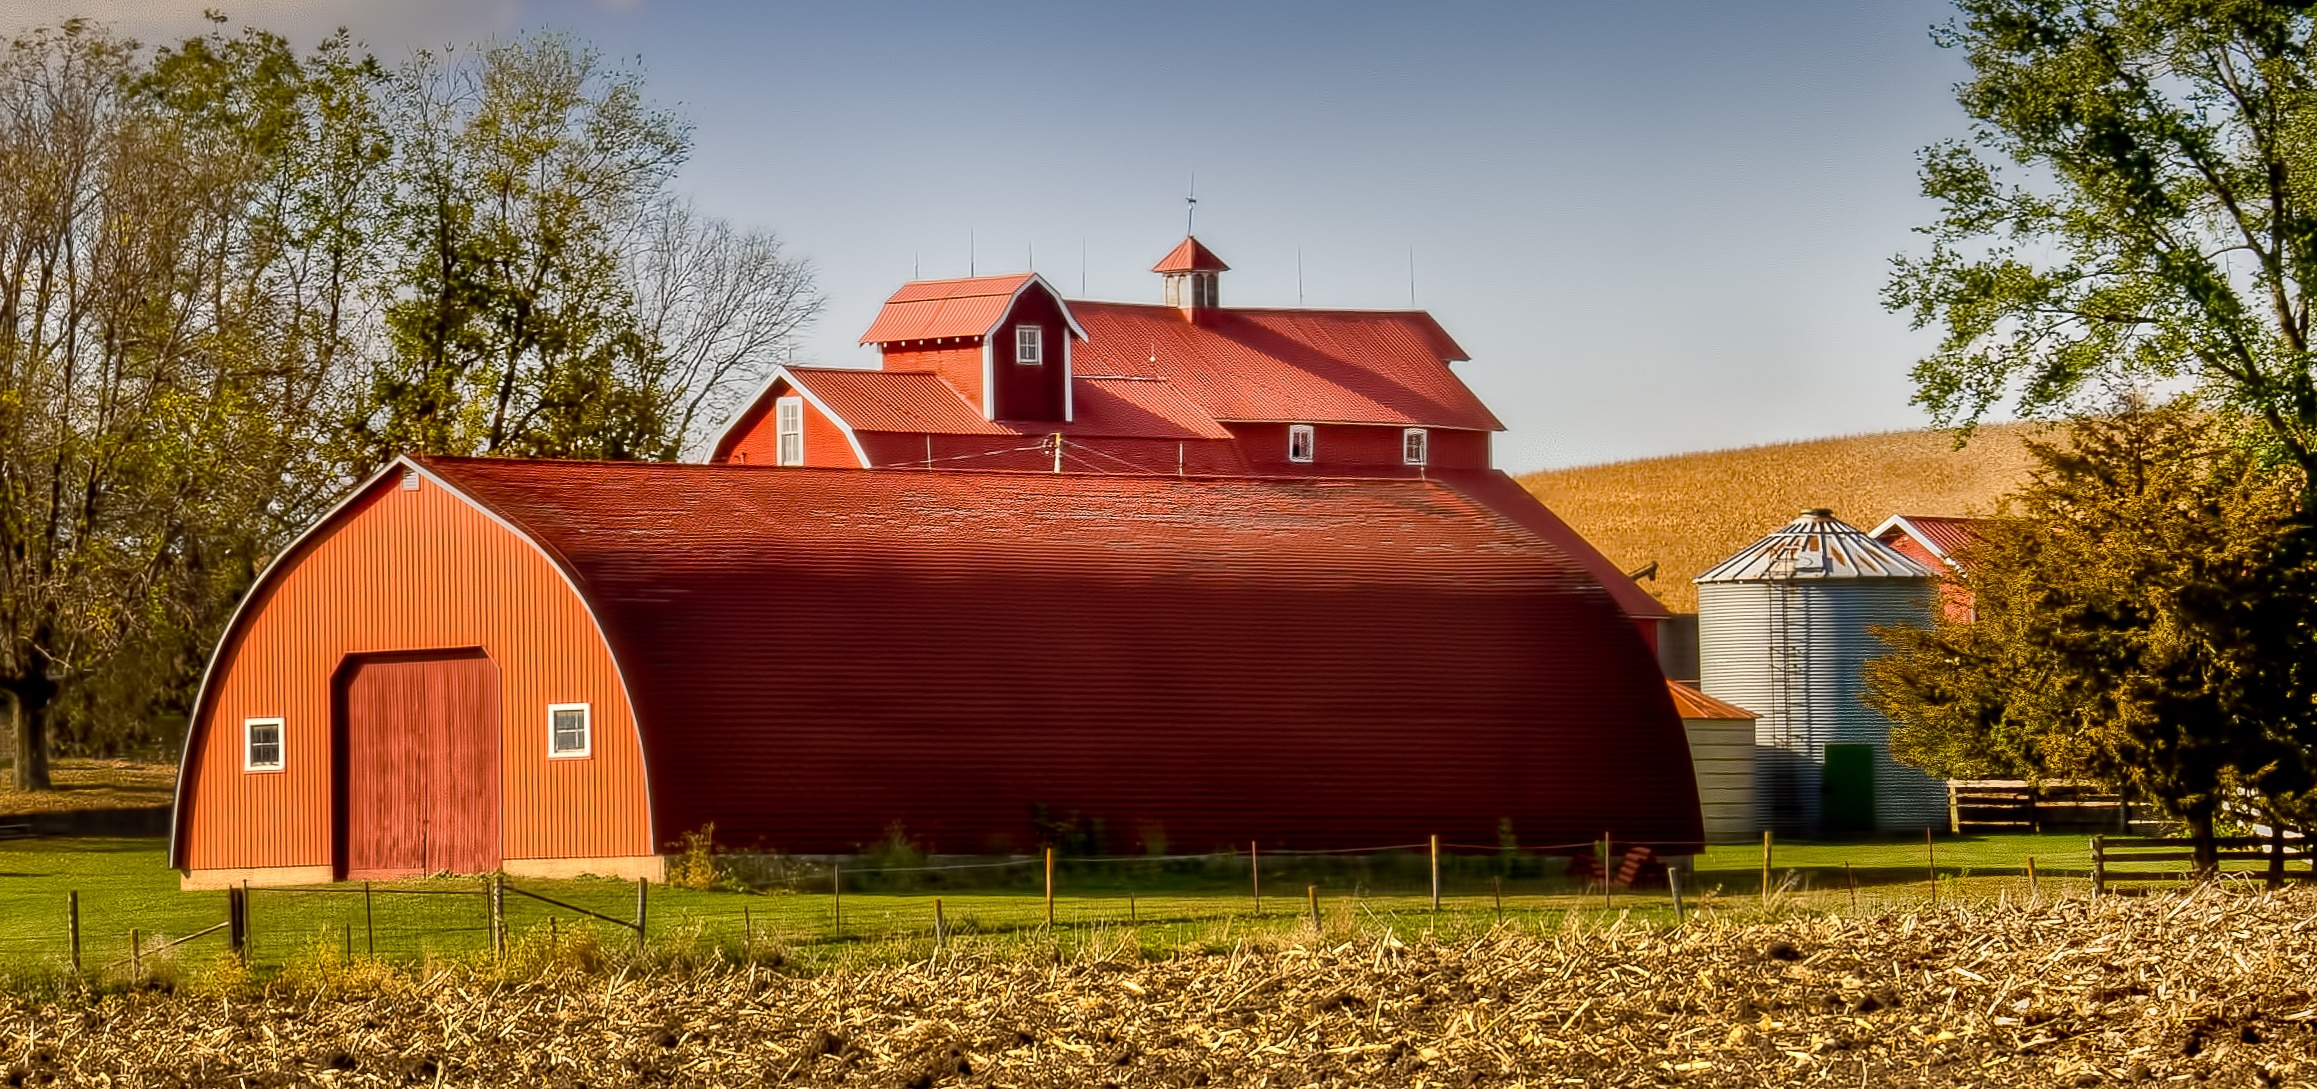 Farming complex in Western Iowa.